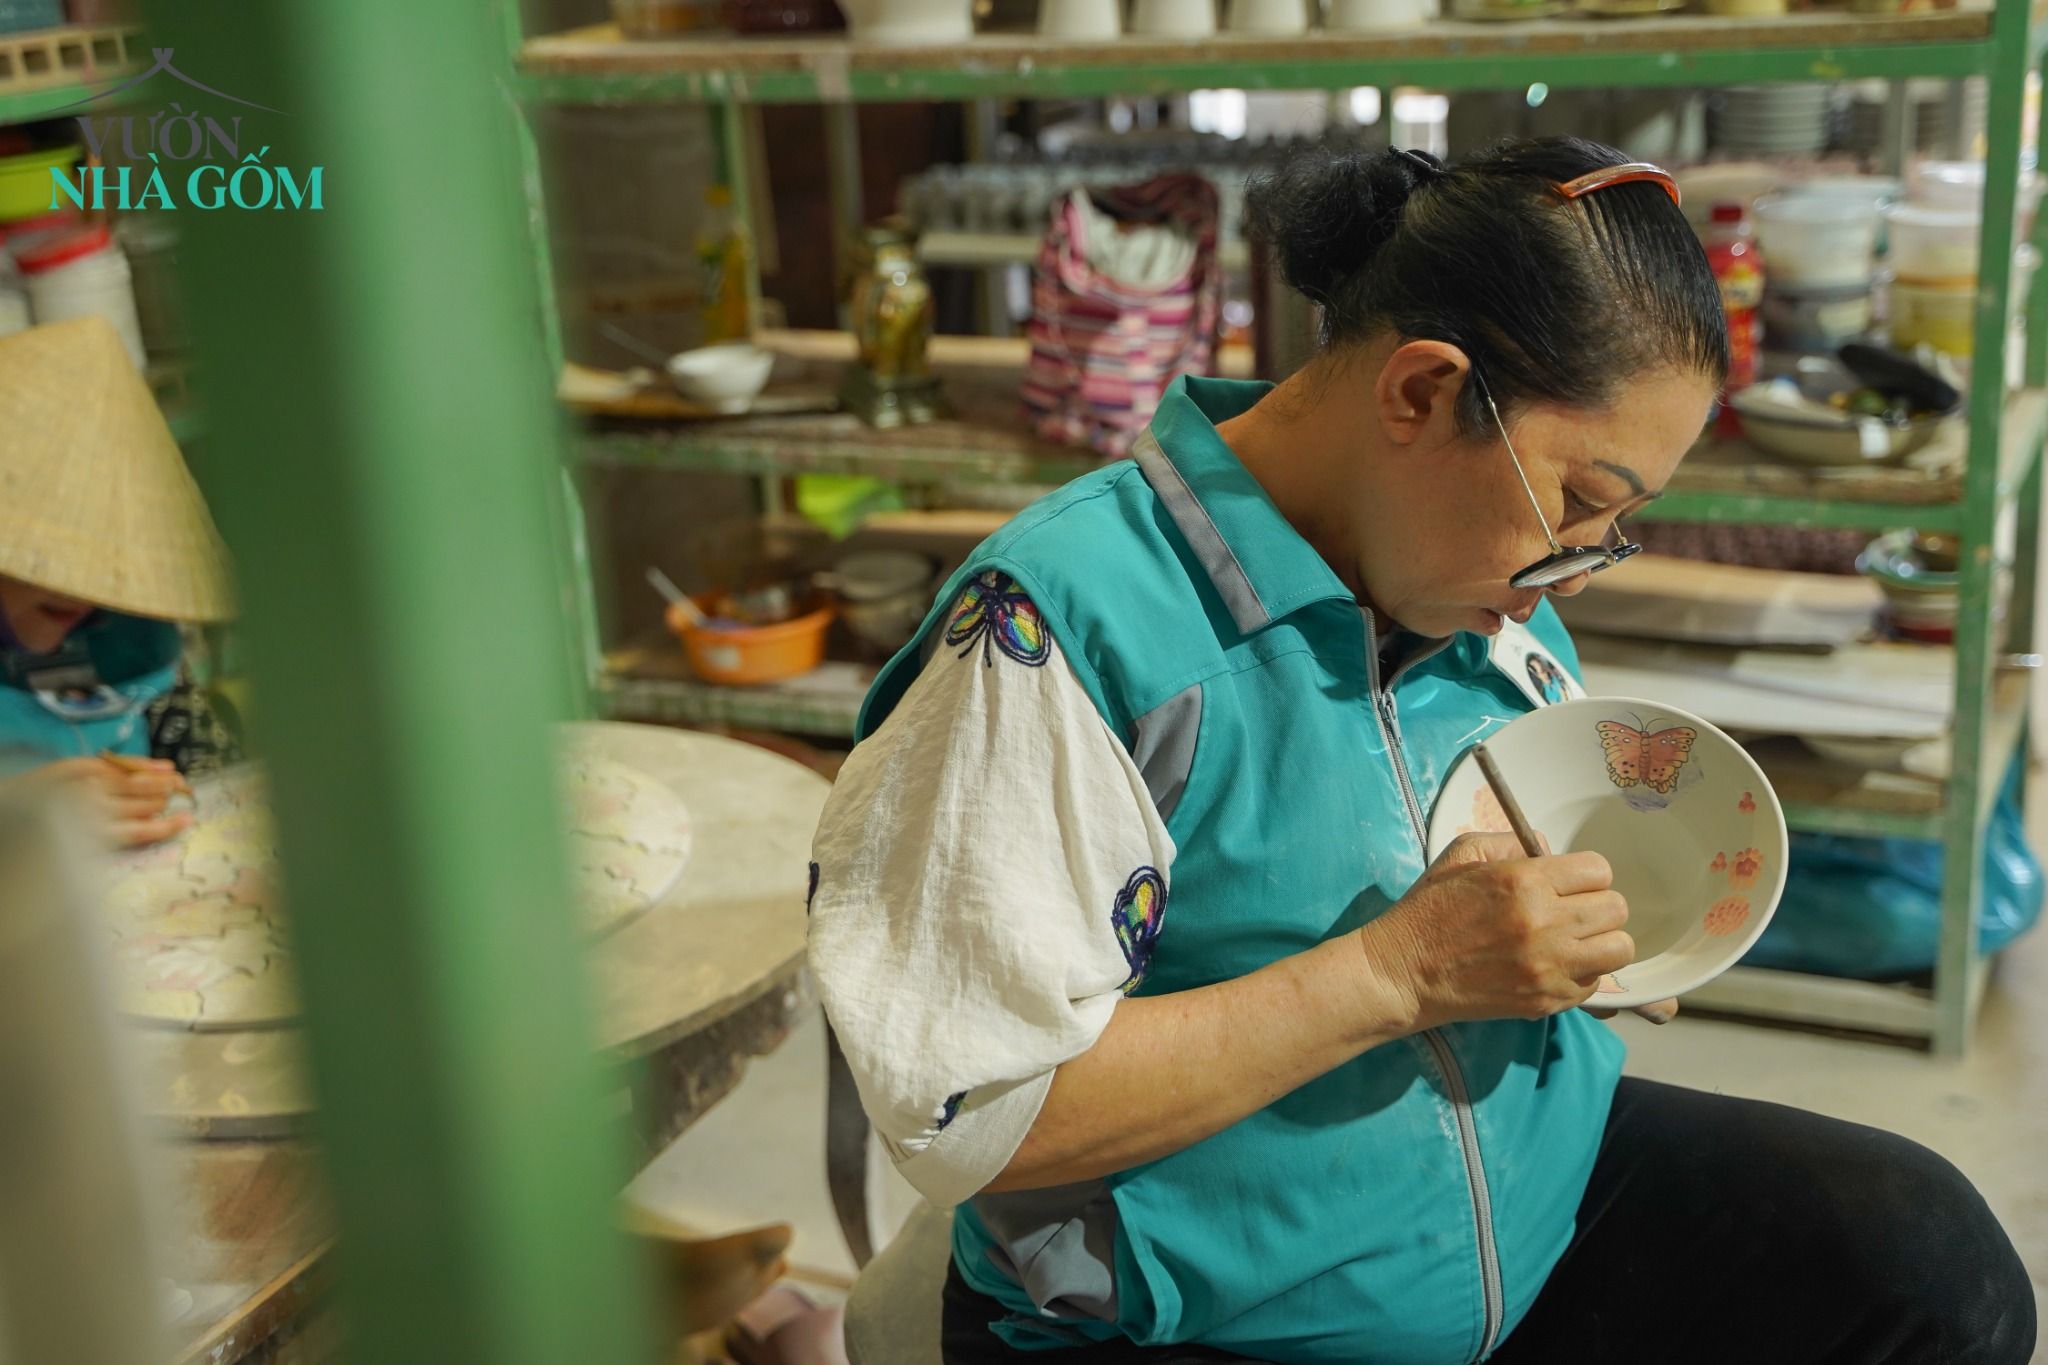  Chén chiết yêu 2023, sản phẩm thủ công đặt sản xuất tại Xưởng gốm Thủ Biên - Vườn Nhà Gốm 